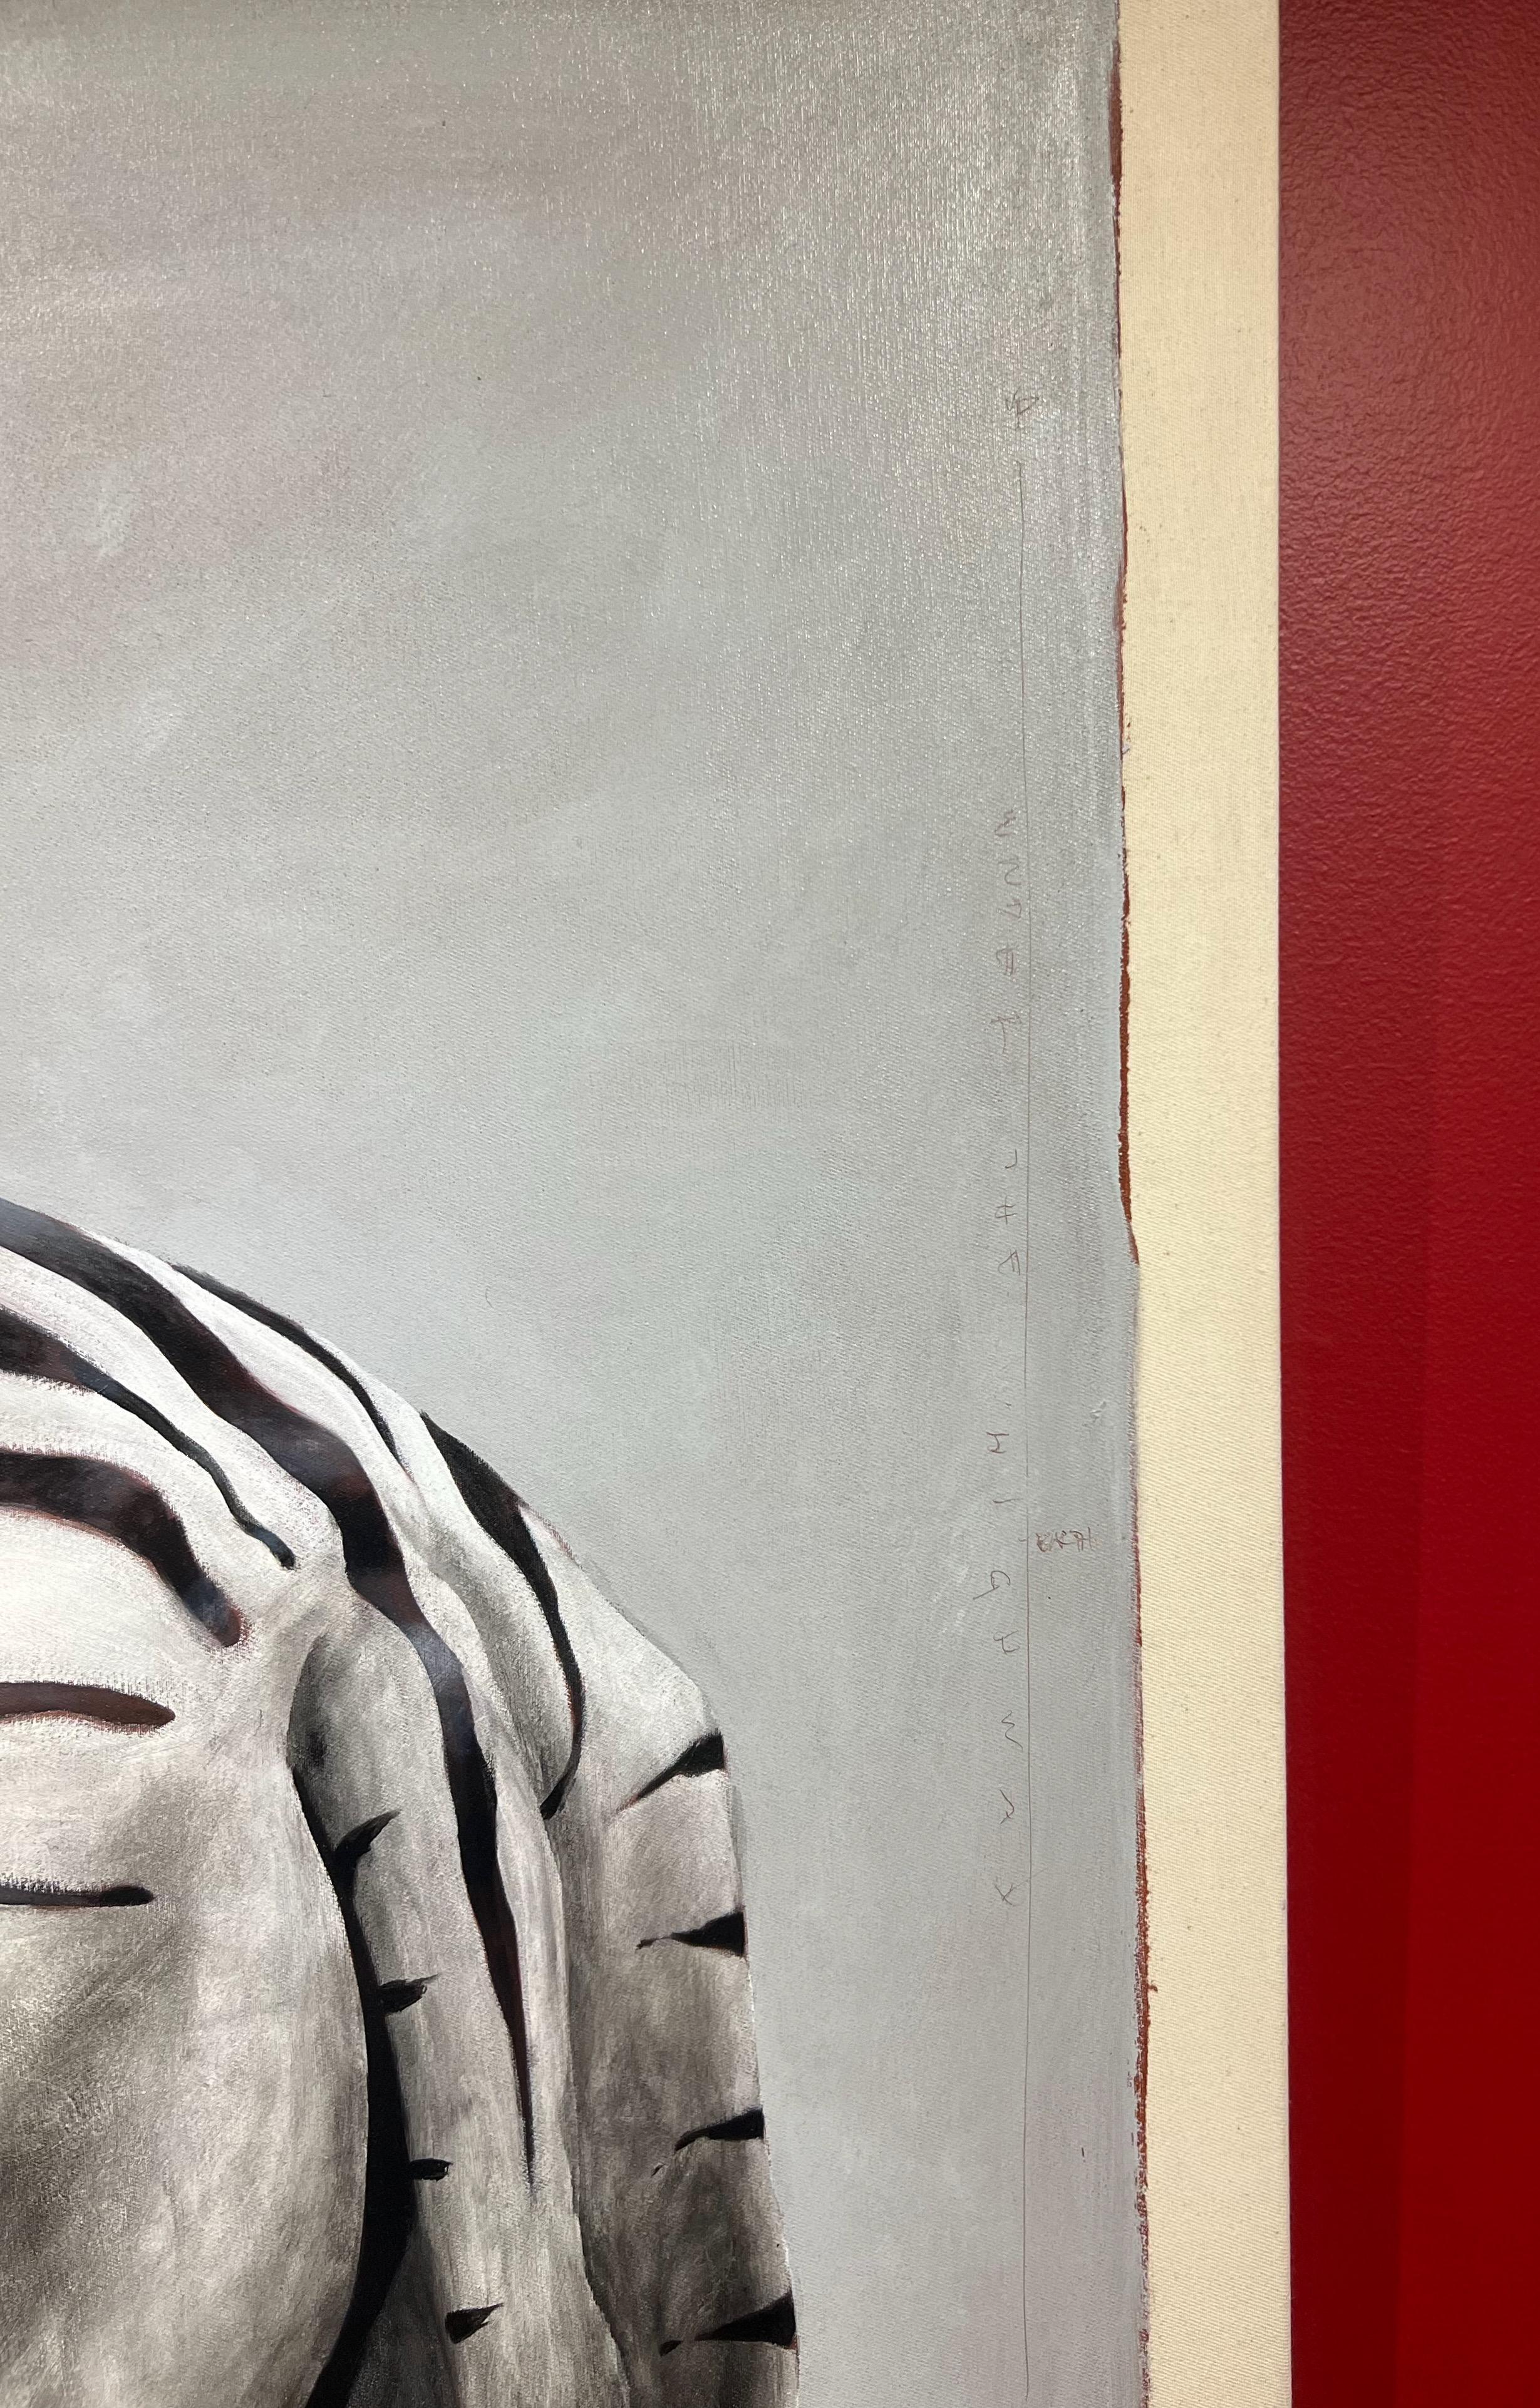 Schwarz-Weiß-Ölgemälde von zwei kuschelnden Zebras.

Santiago Garcia erkundet in seinen Werken die wundersame, farbenfrohe und stets faszinierende Welt zwischen Figuration und Abstraktion. Durch die Kontextualisierung der Realität stellt das Werk